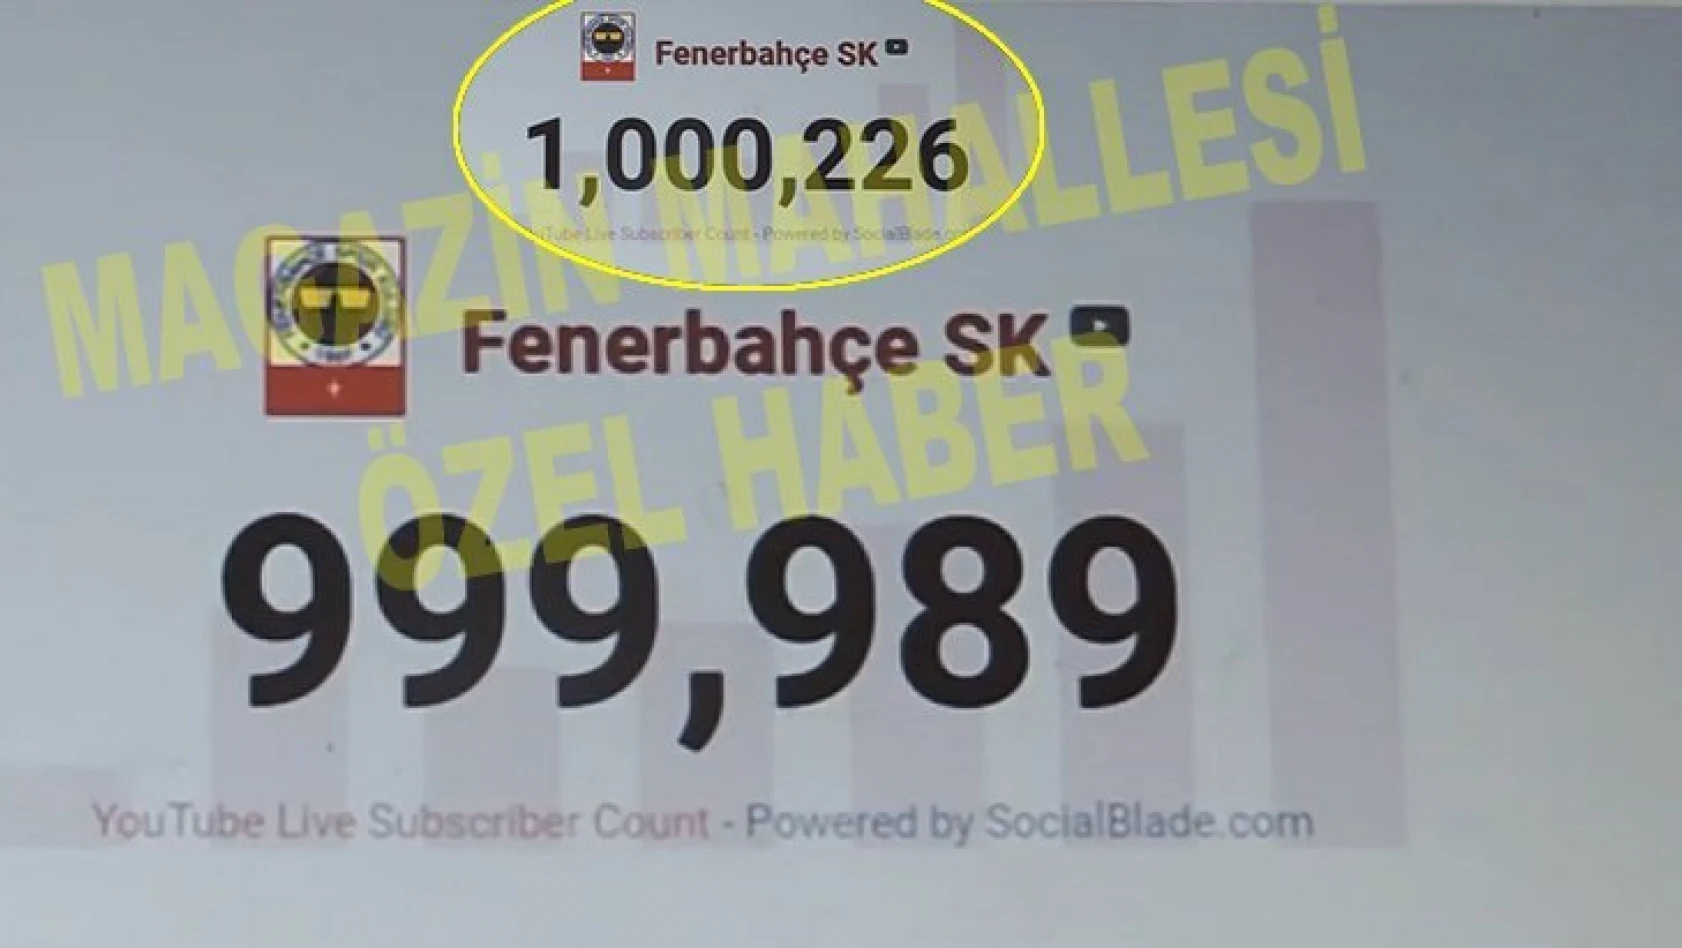 Fenerbahçe'nin YouTube'da 1 milyon aboneye ulaşma anının videosu